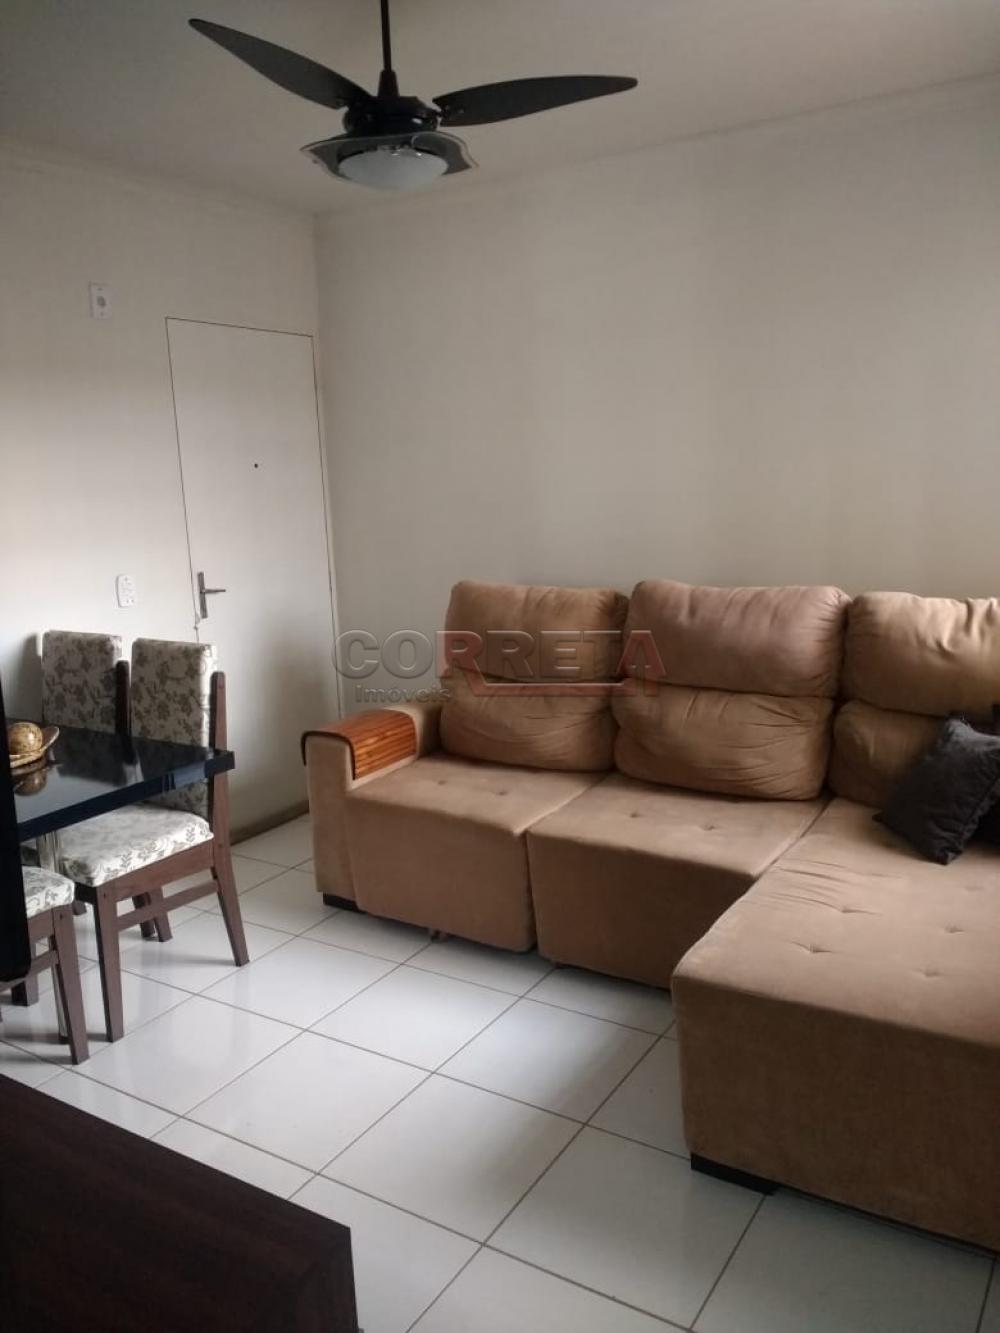 Comprar Apartamento / Padrão em Araçatuba R$ 130.000,00 - Foto 5